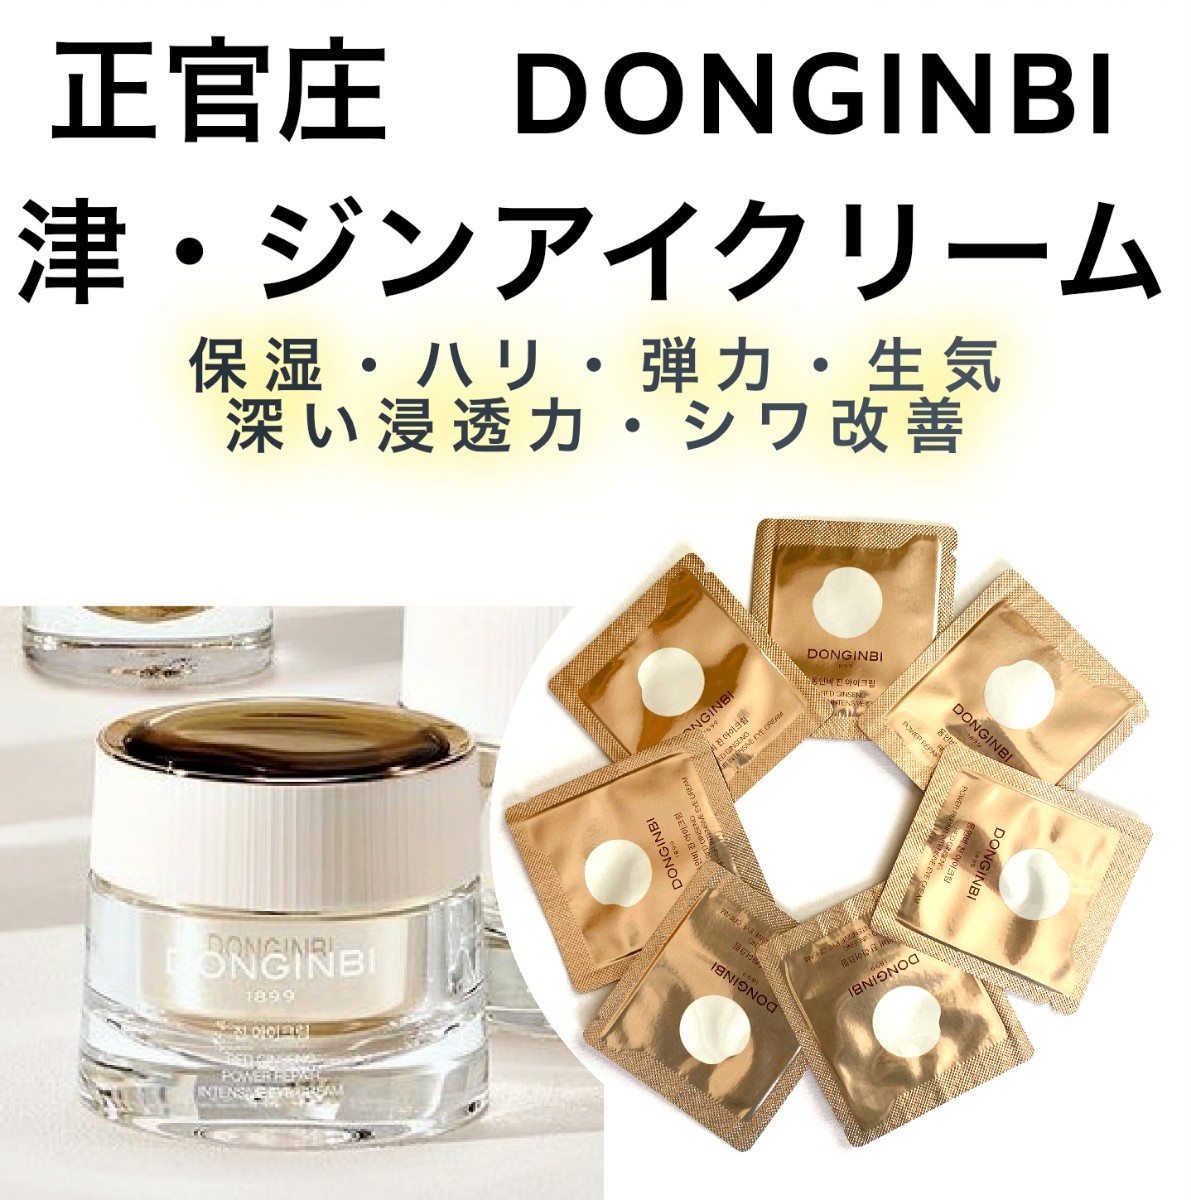 注目ショップ・ブランドのギフト ドンインビ DONGINBI 基礎化粧品フル 